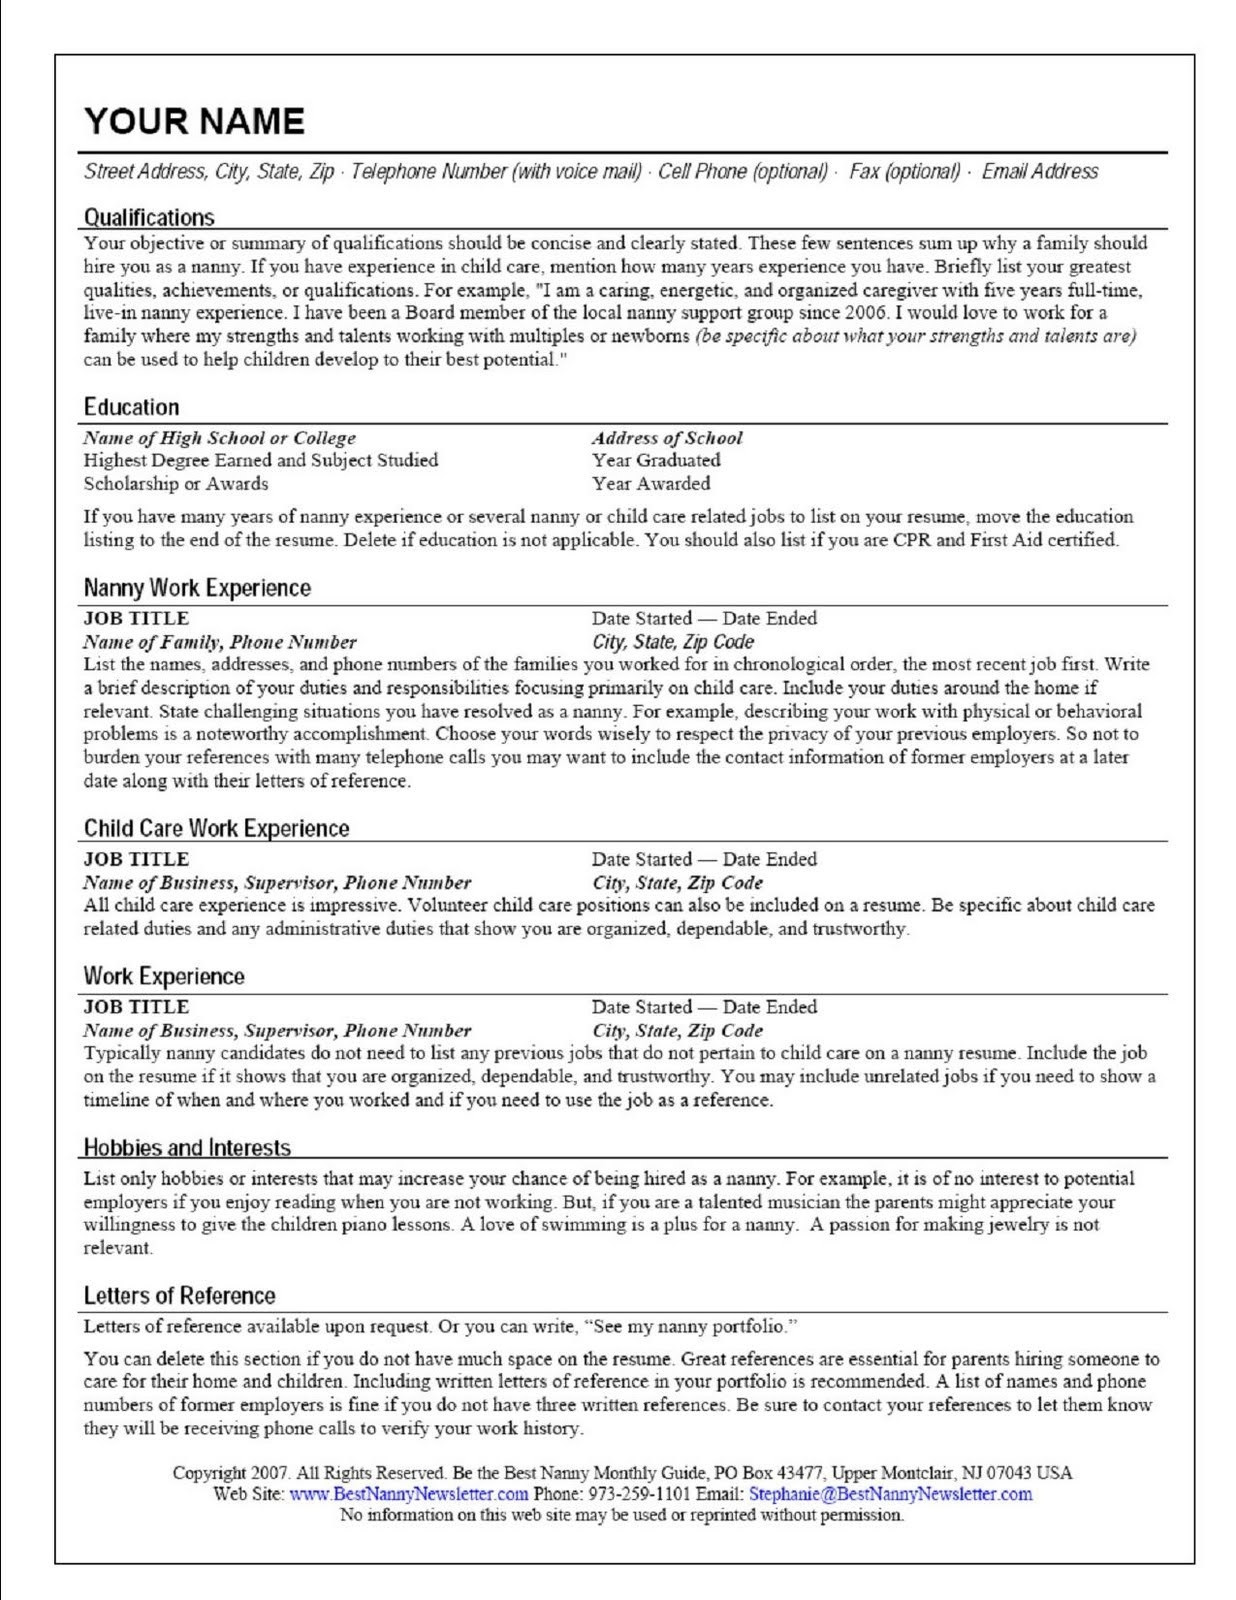 324 sample resume for caregiver for an elderlyml